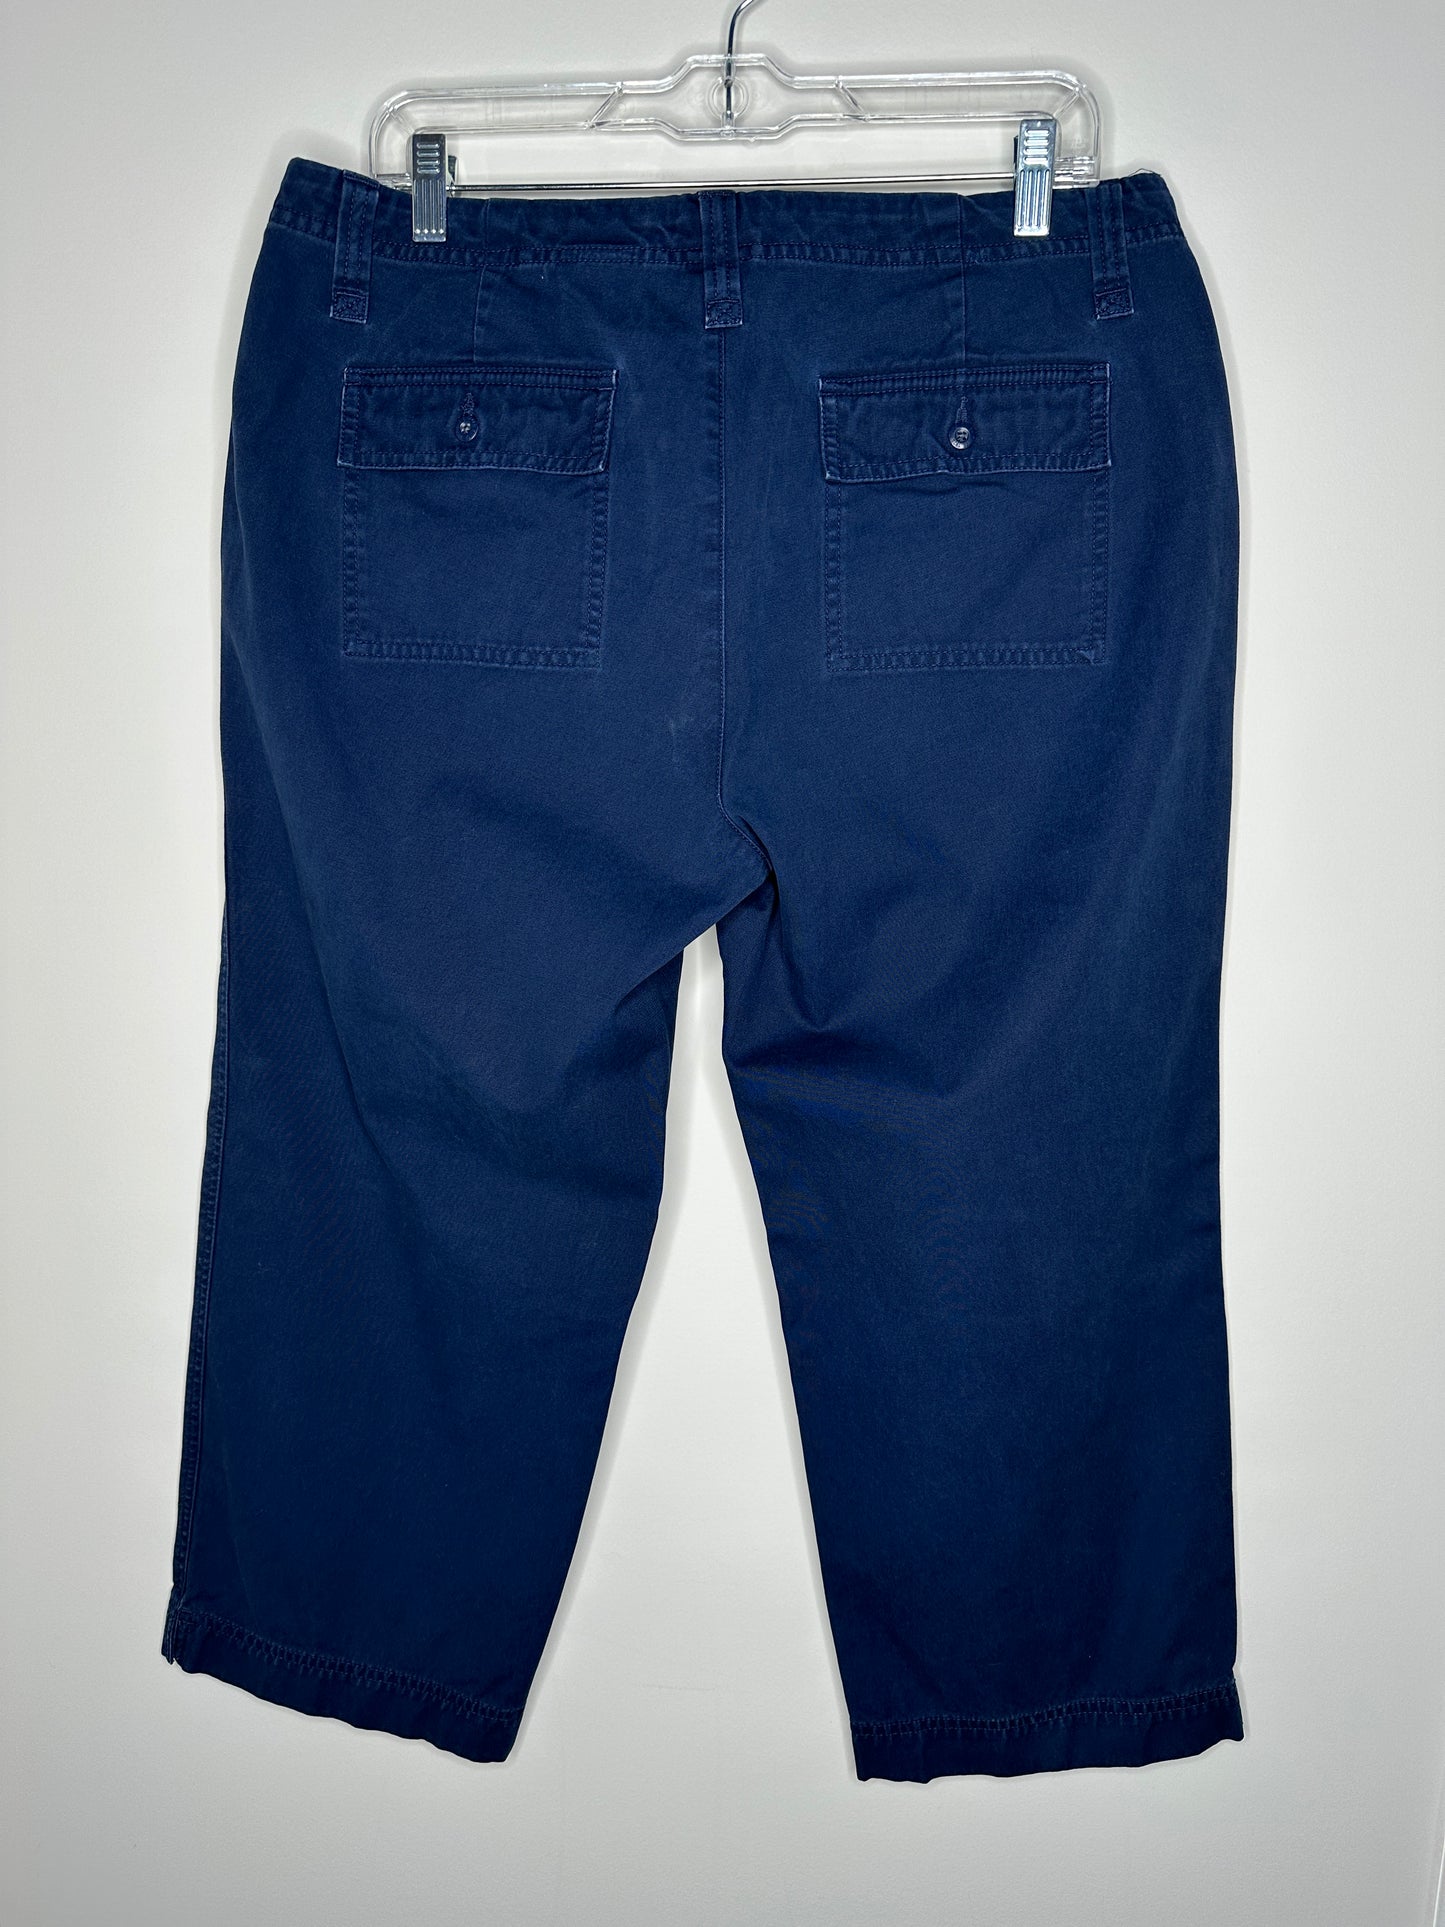 Eddie Bauer Size 12 Navy Blue Vashon Fit Capris Capri Pants